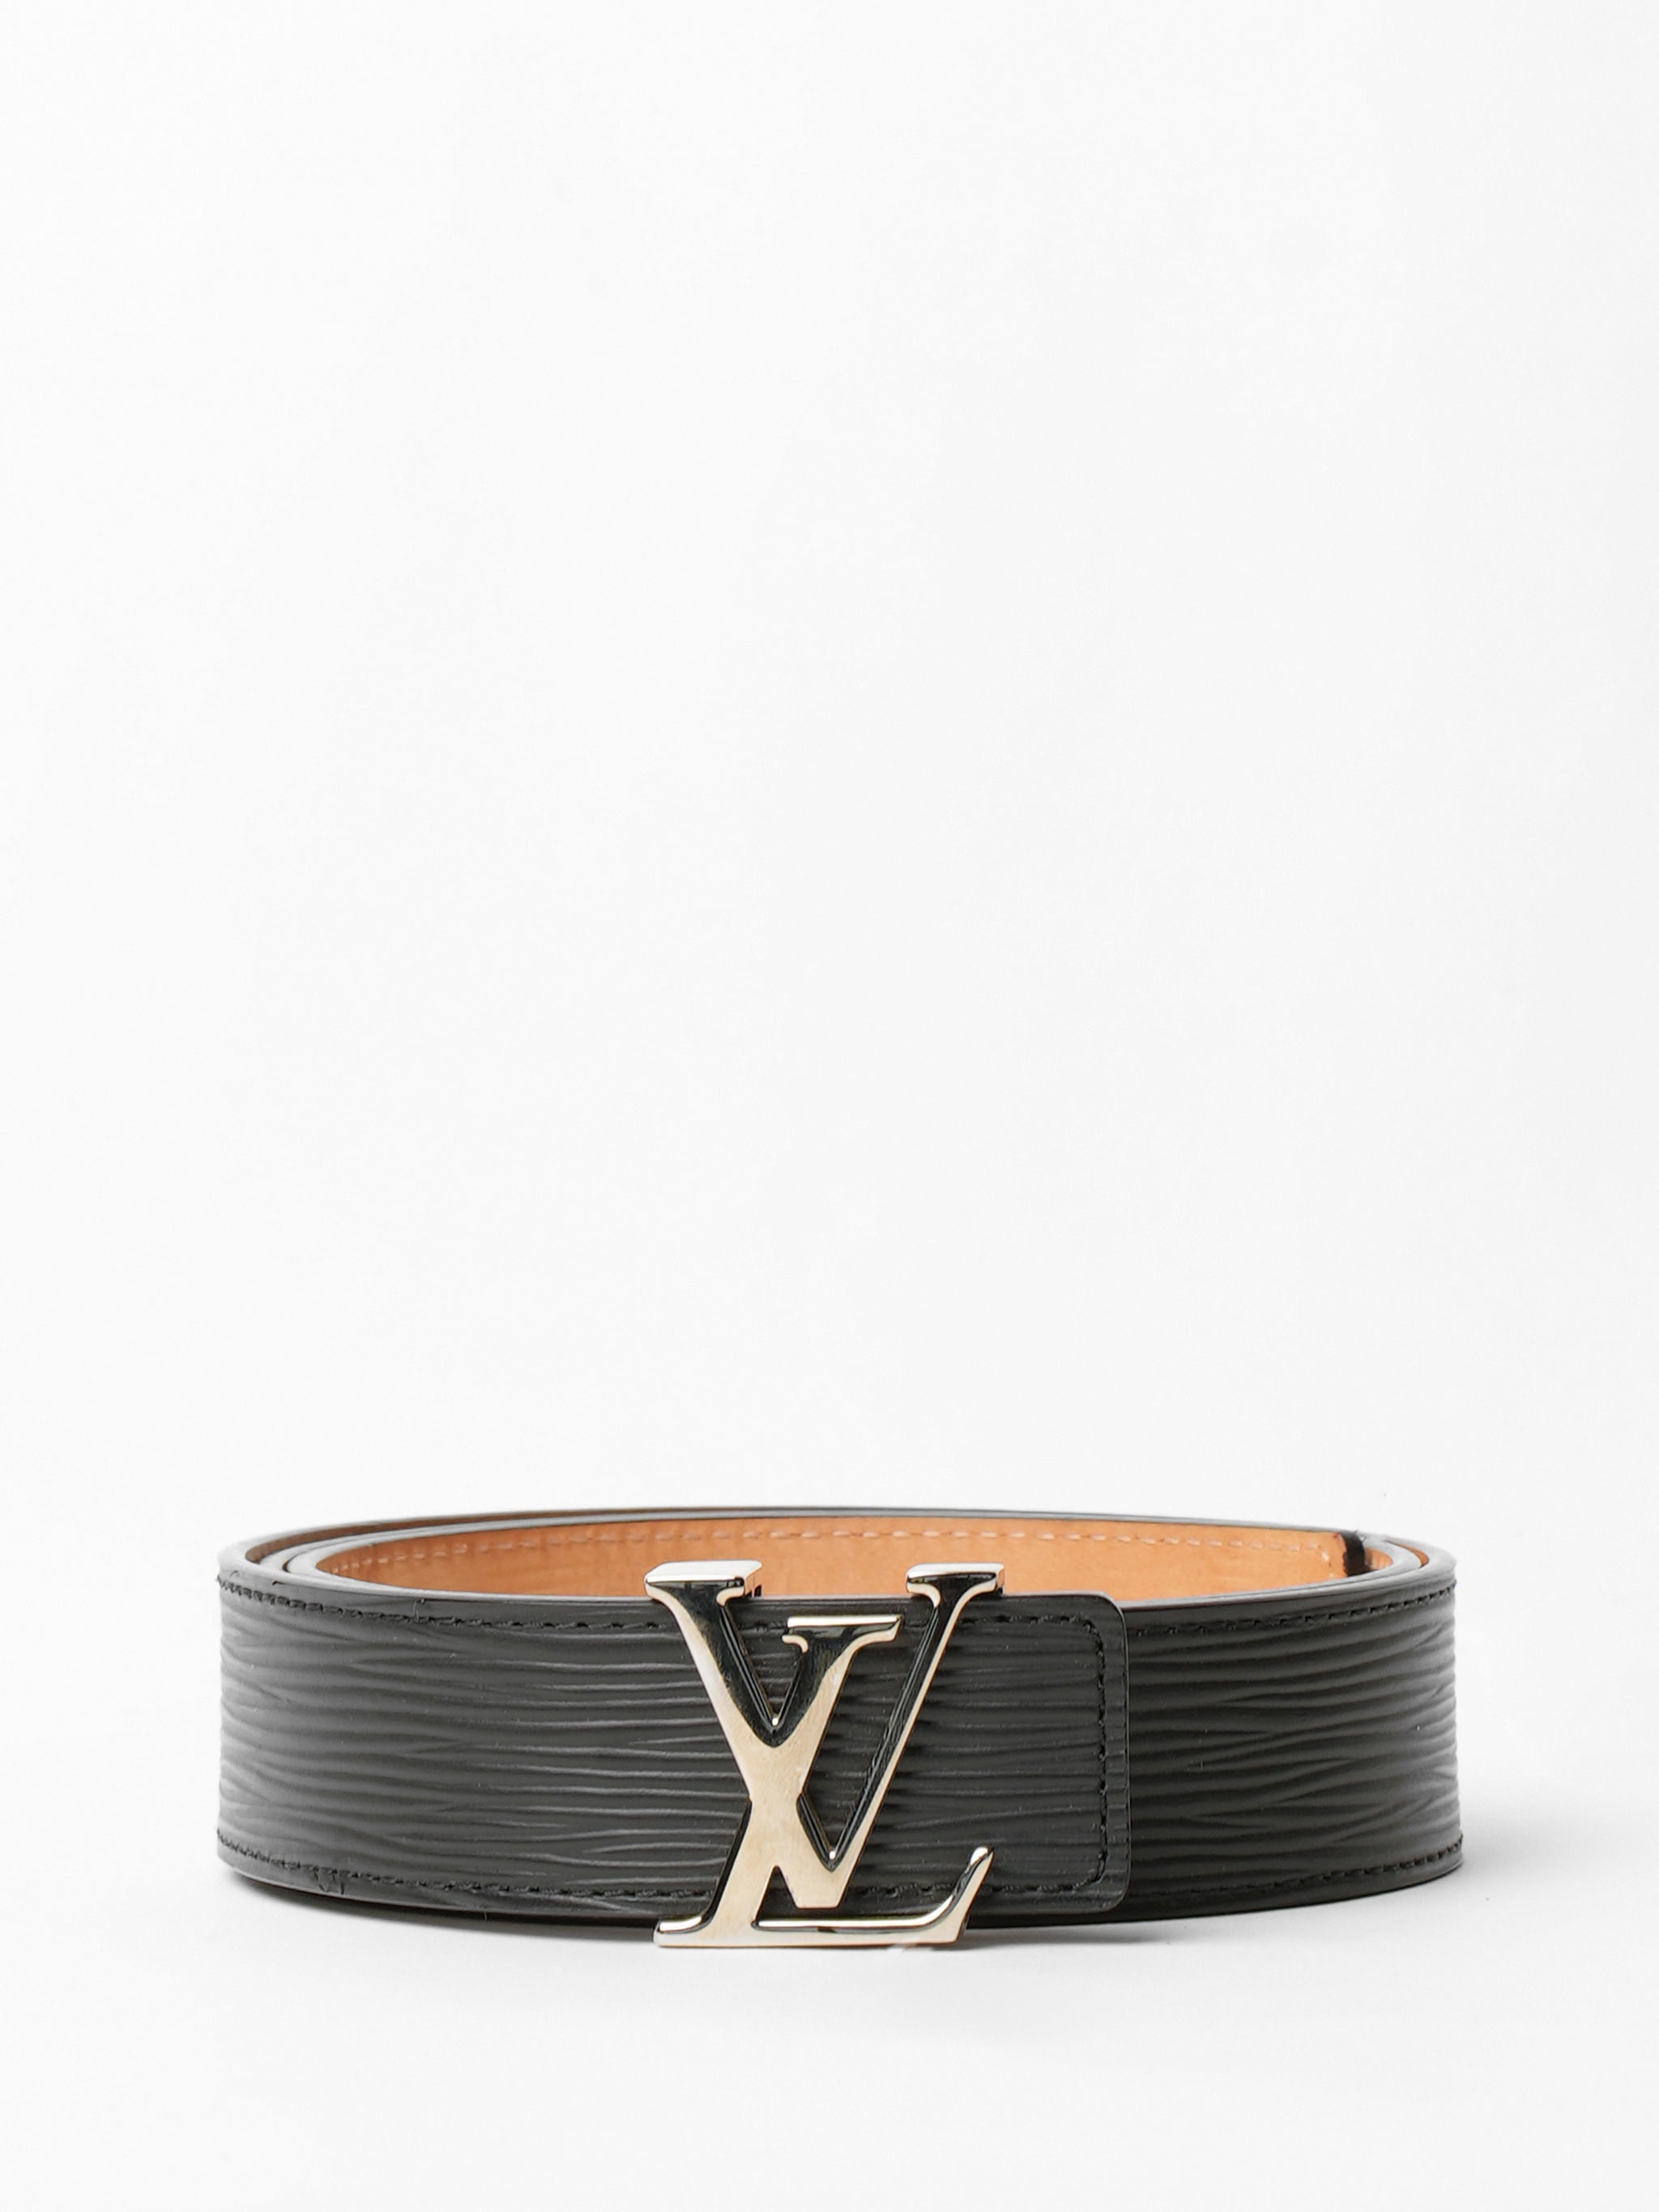 louis vuitton black leather belt